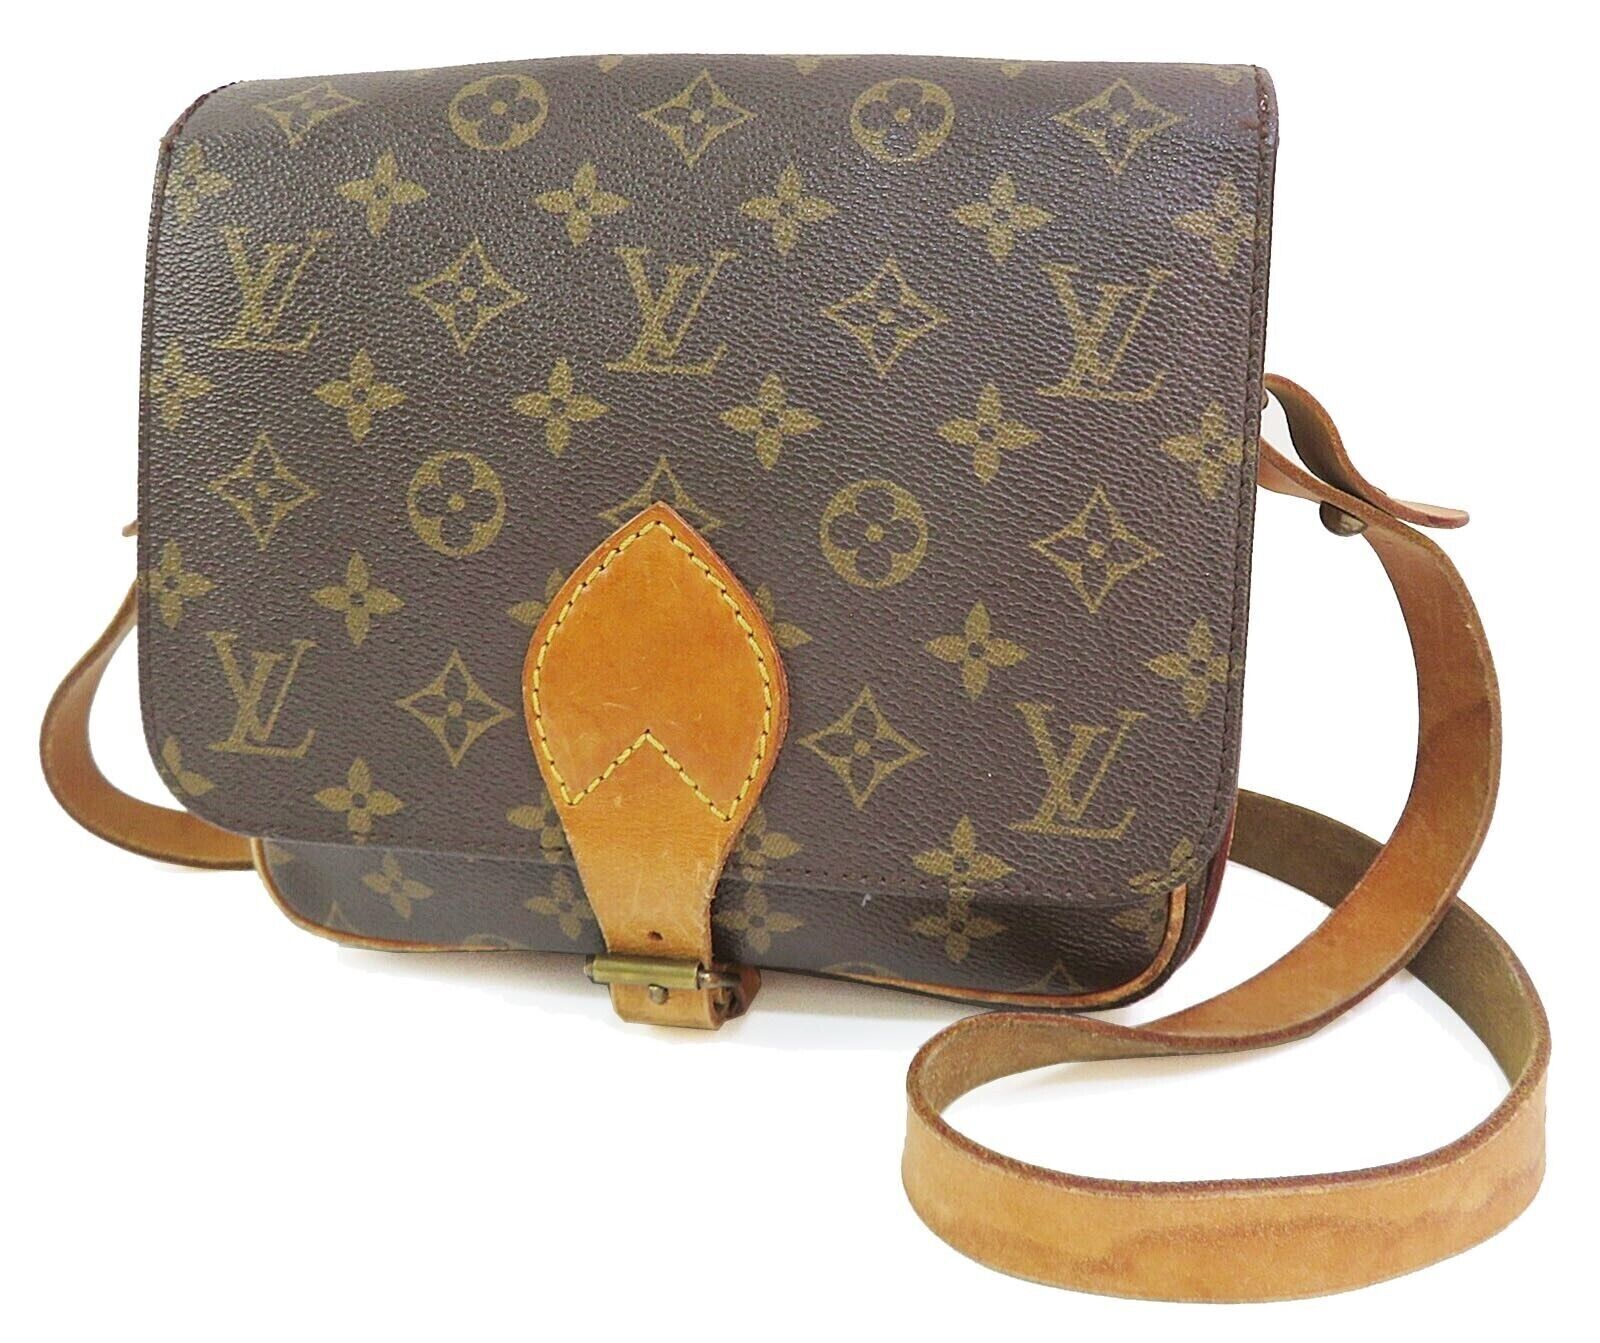 Authentic LOUIS VUITTON Cartouchiere MM Monogram Shoulder Bag Purse - Pre-Owned